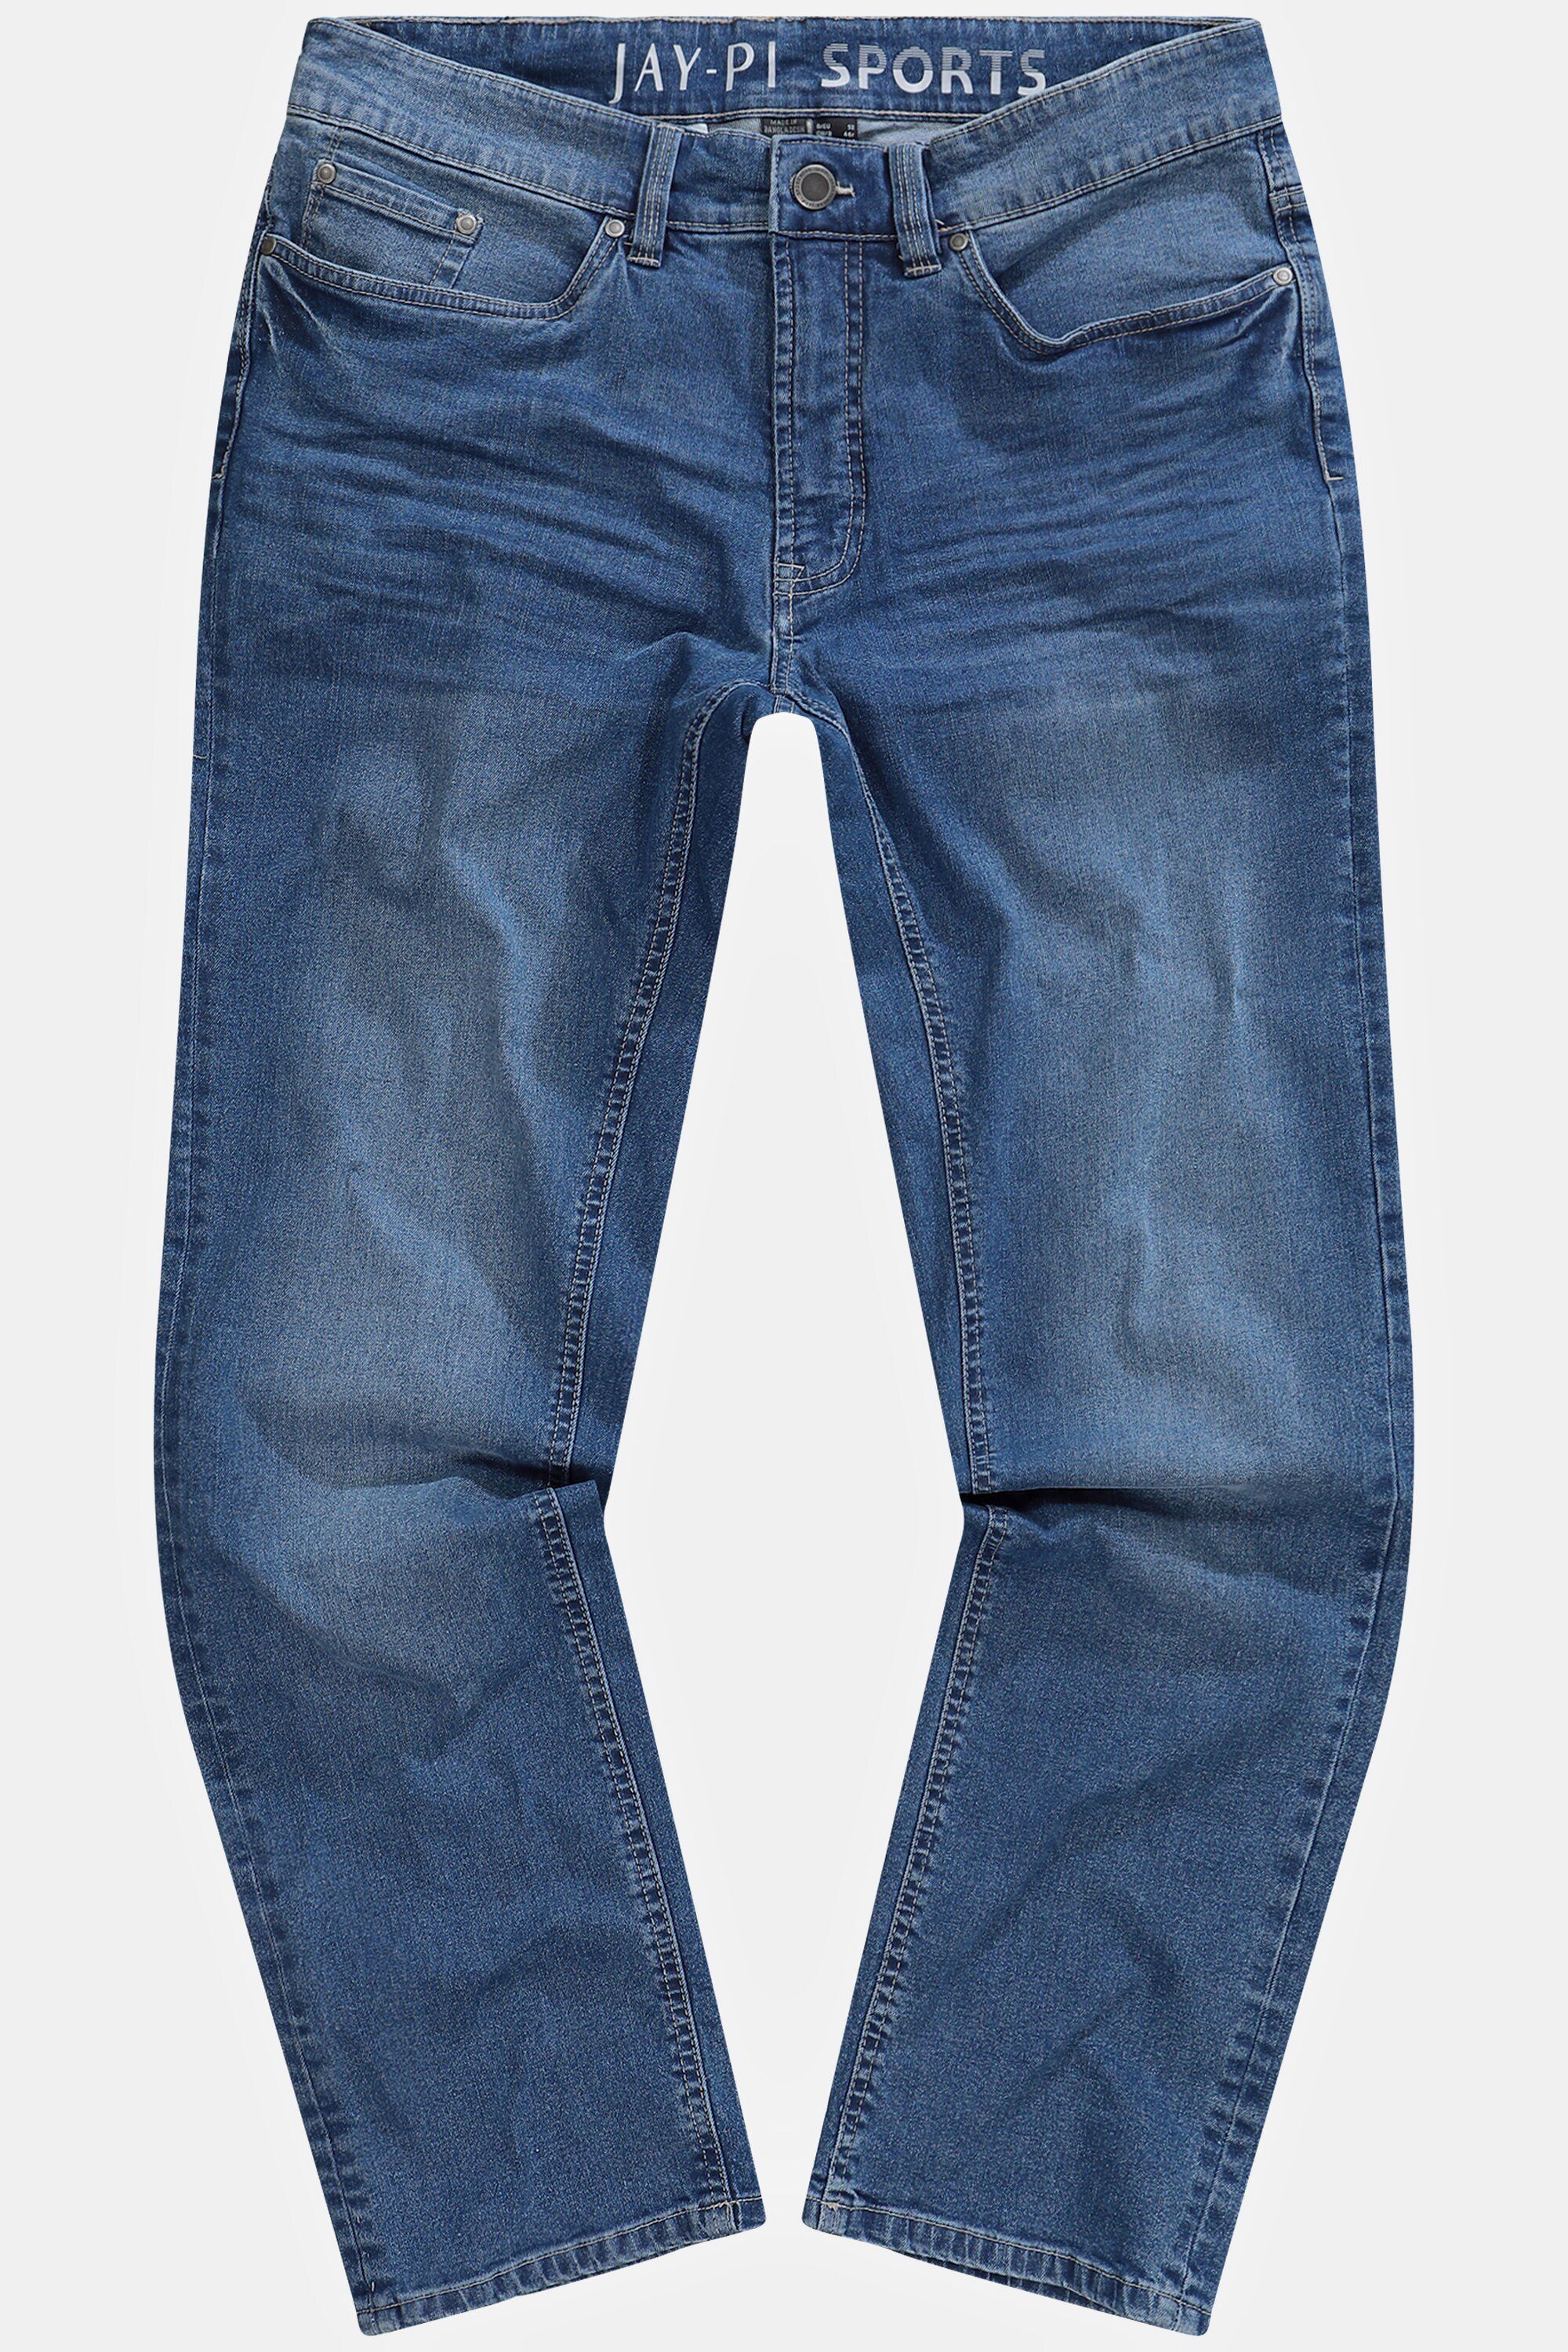 Reflektor-Saum Safety-Pocket Jeans 5-Pocket-Jeans JP1880 Denim